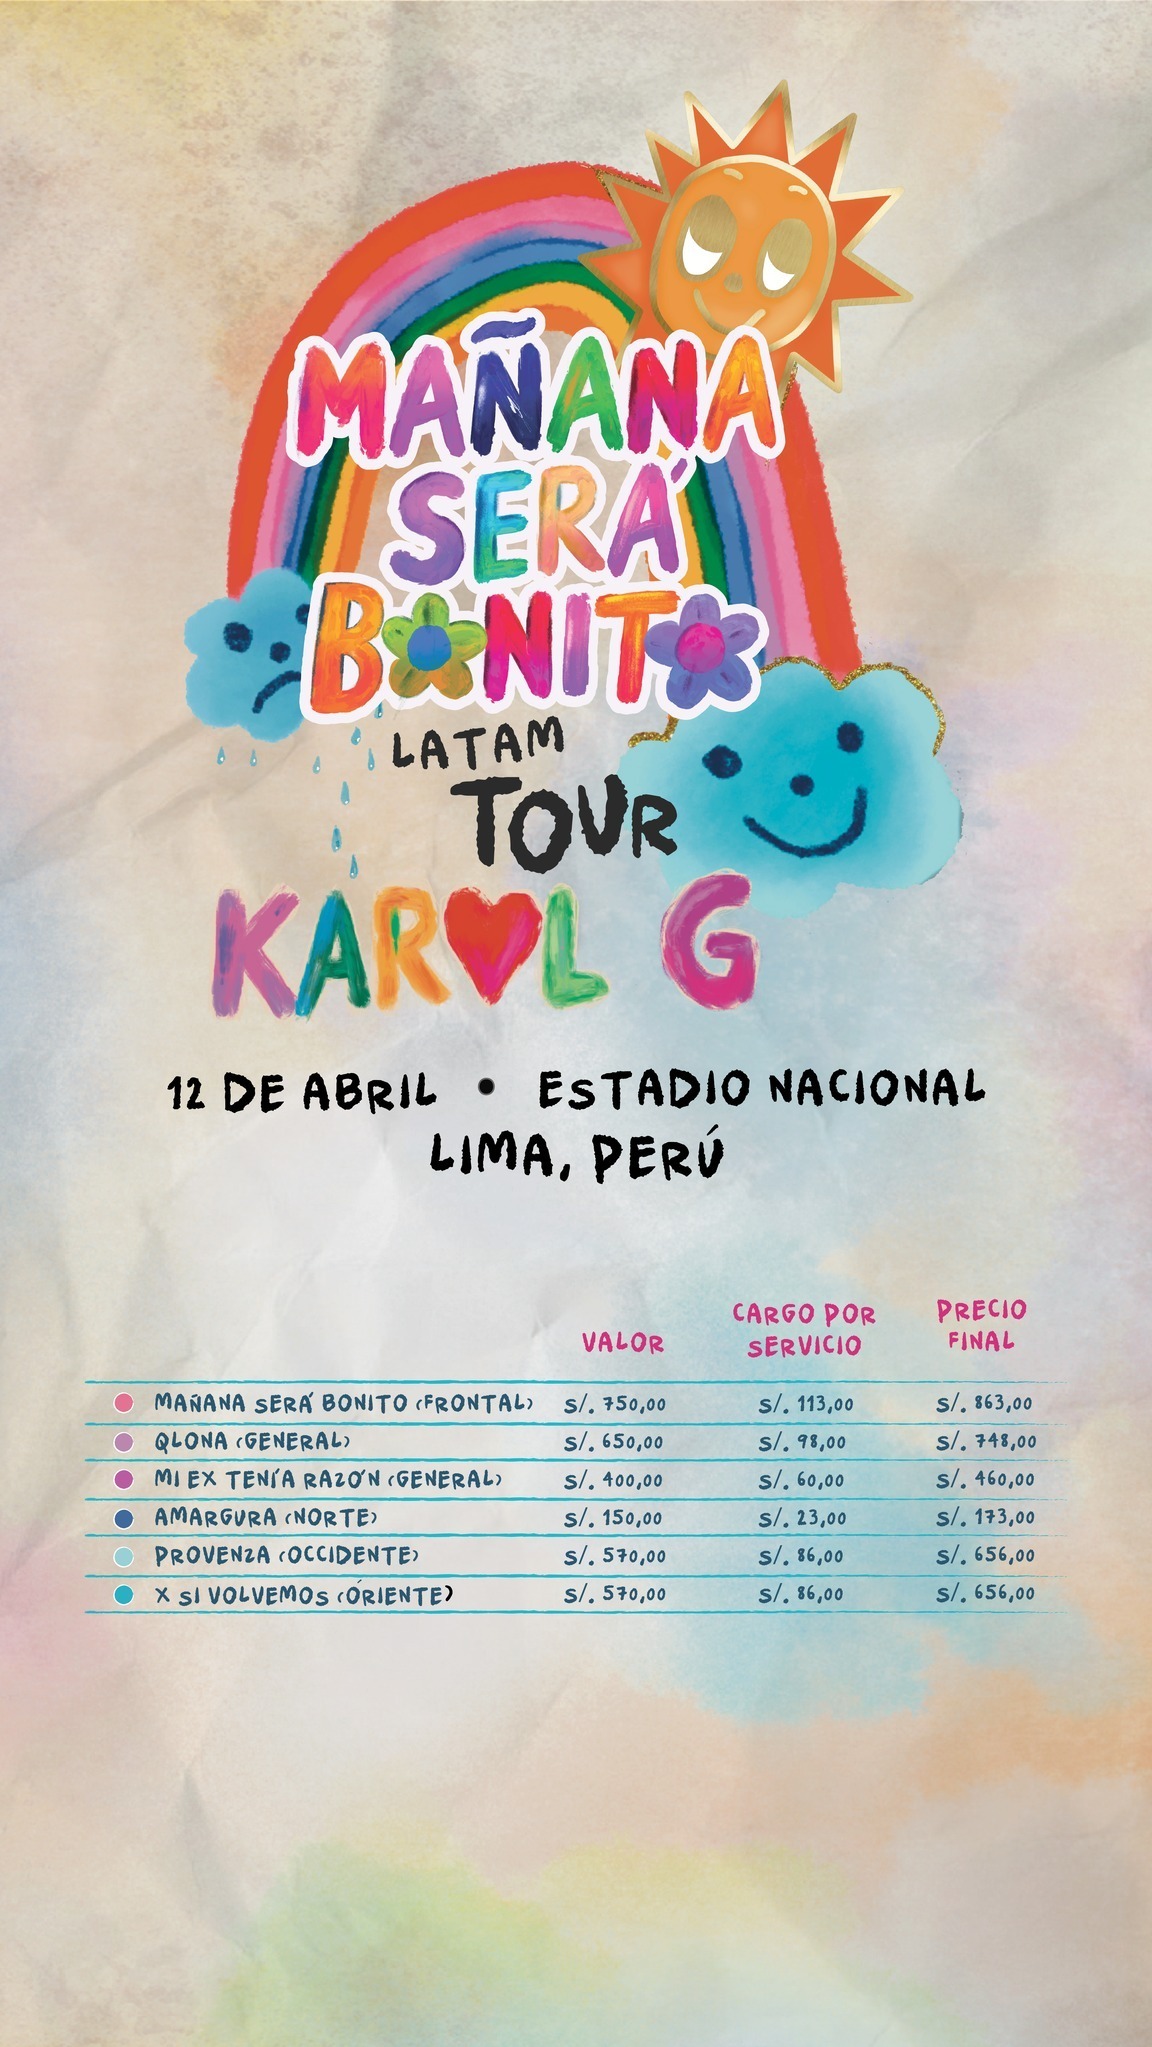 Precio final de las entradas para el concierto de Karol G en Lima / Instagram